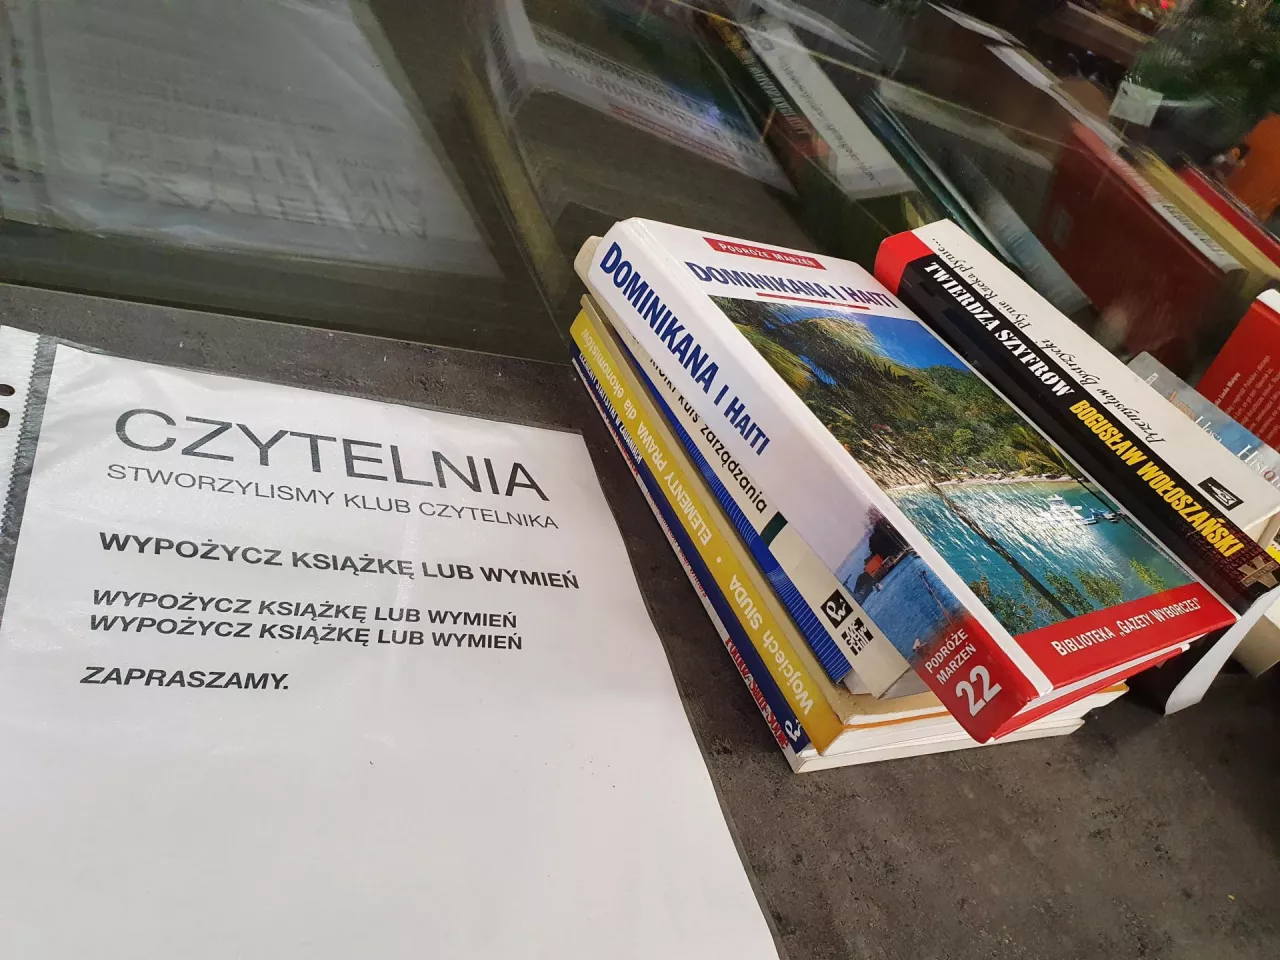 Klub czytelnika w sklepie sieci Carrefour; lipiec 2022 r. (fot. wiadomoscihandlowe.pl)